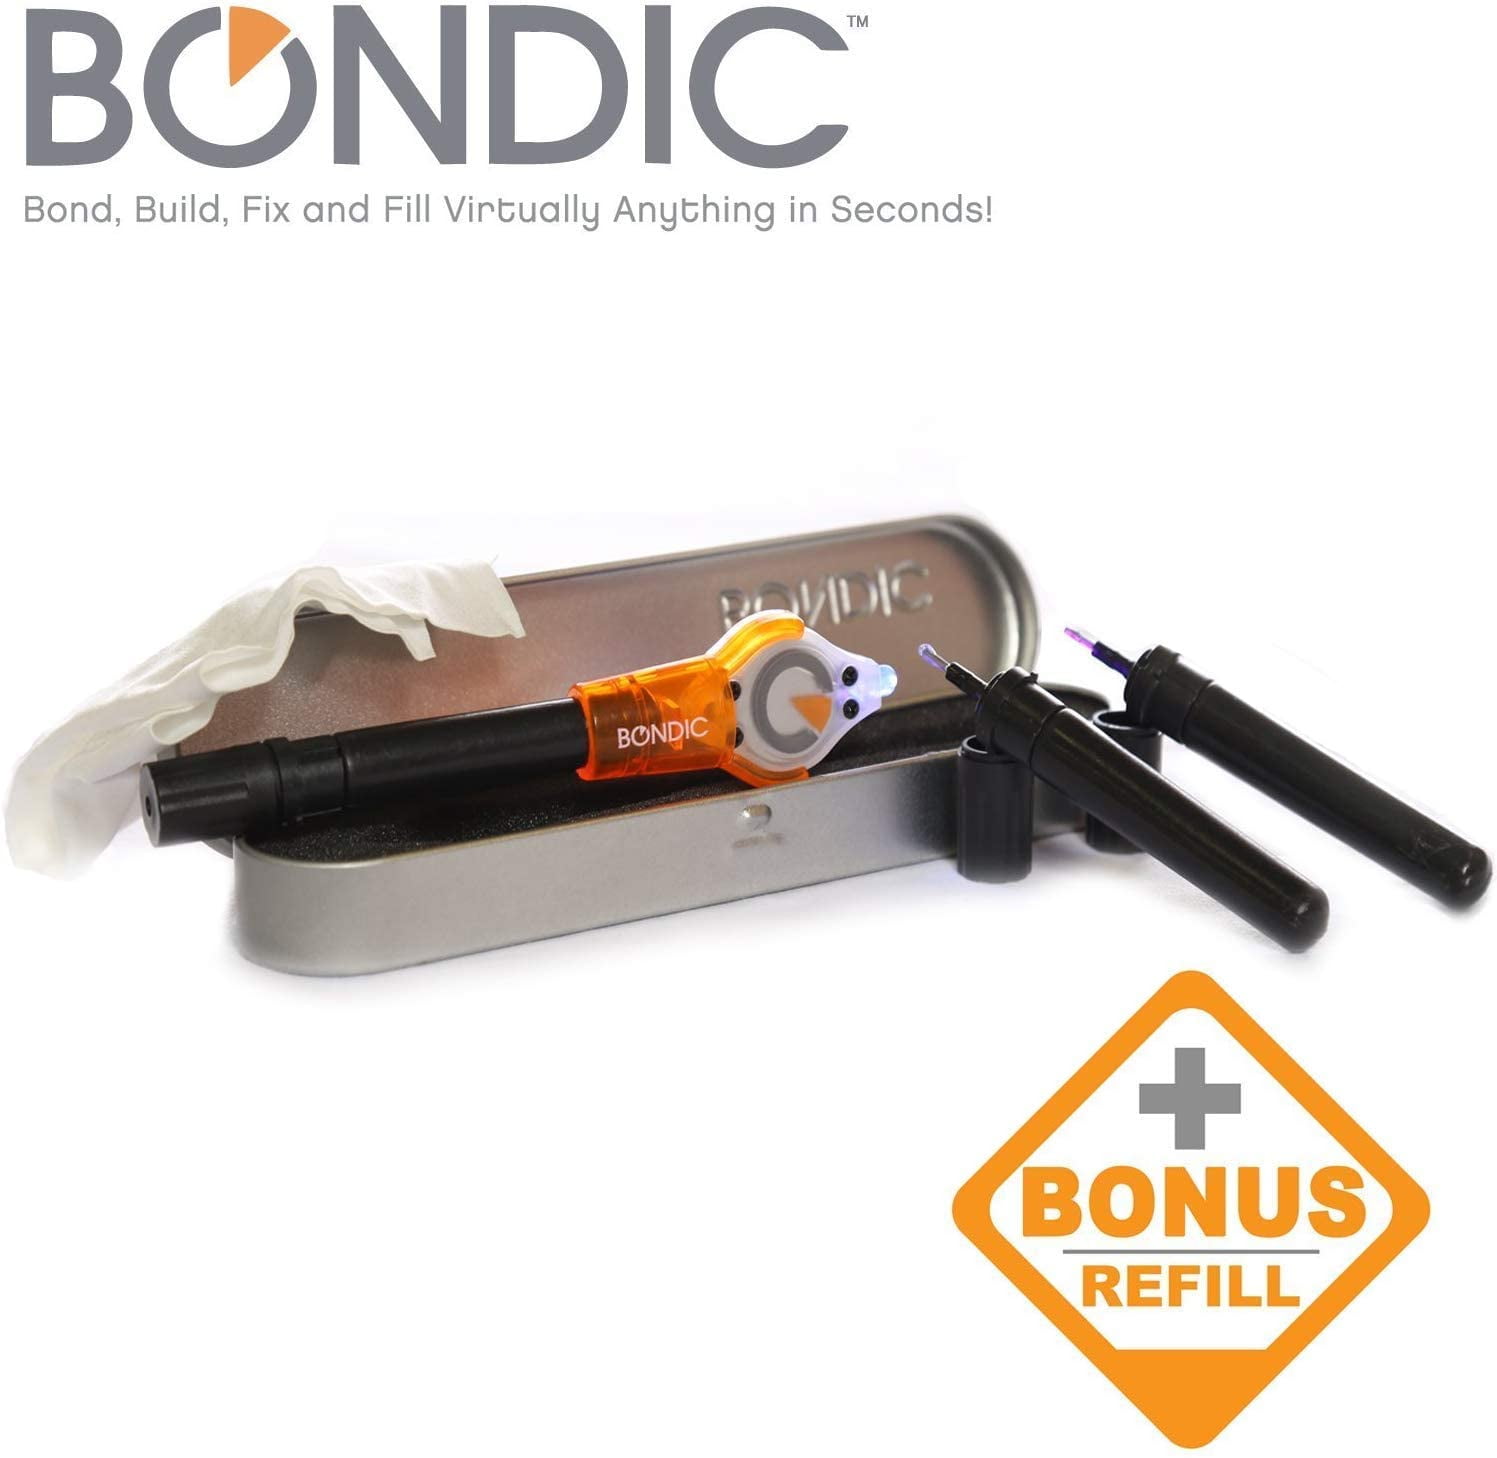 Bondic Repair Anything 100% Non Toxic Liquid Plastic Welder